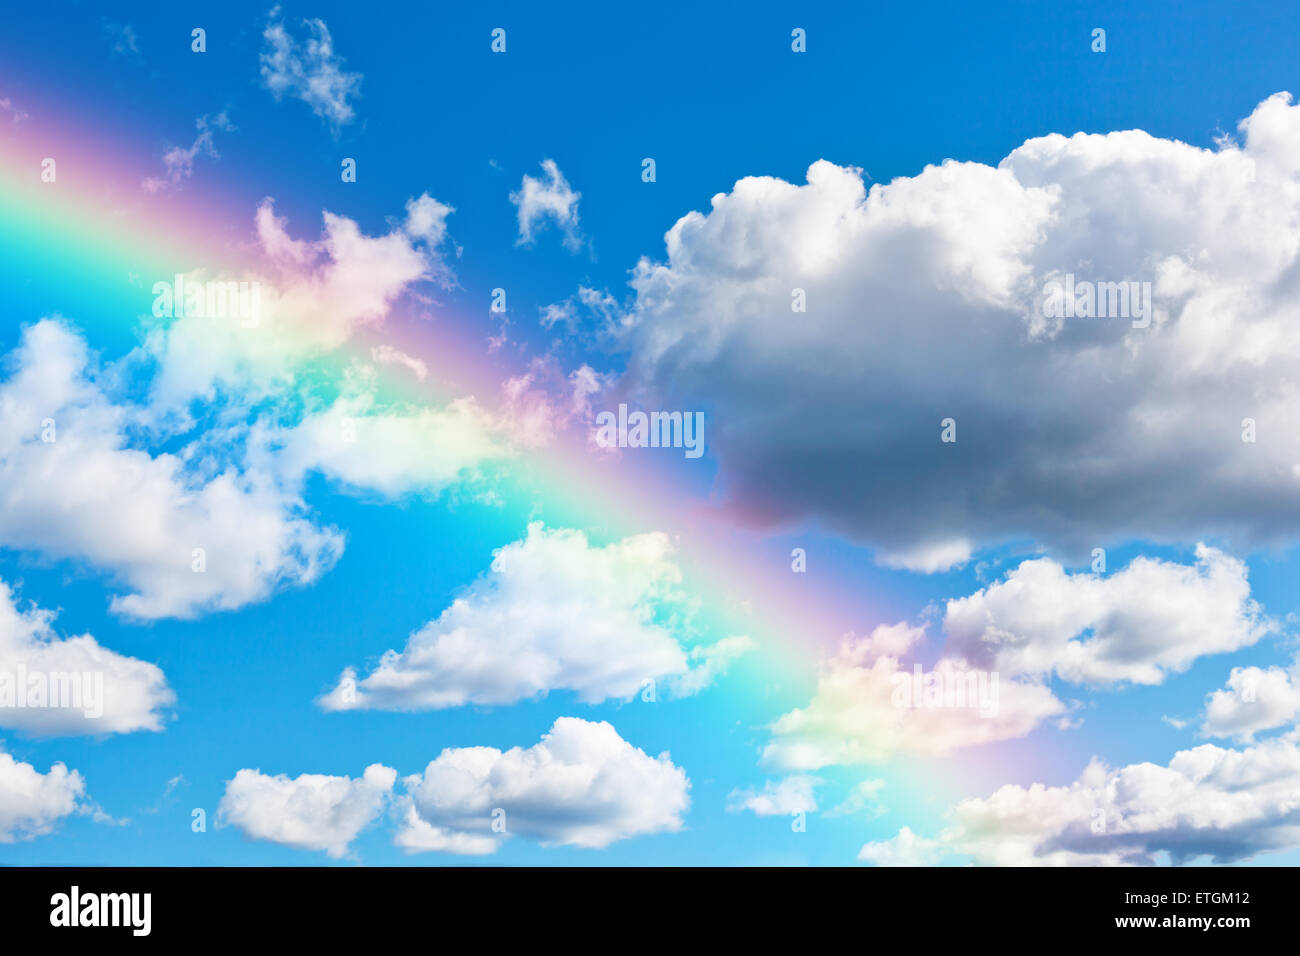 Cloudly avec fond de ciel bleu arc-en-ciel colorés Banque D'Images